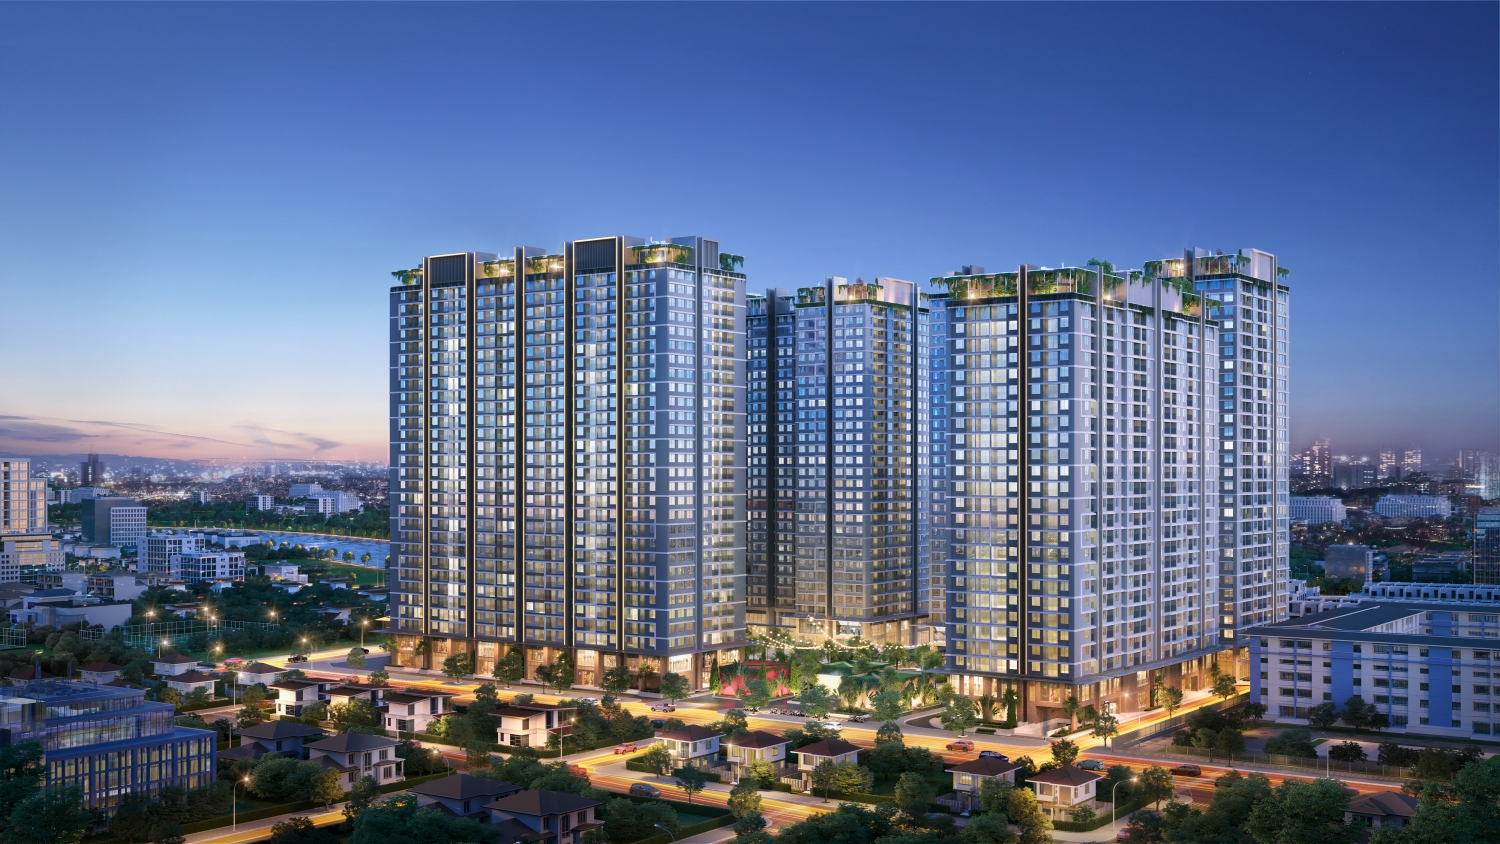 Hà Nội: Nhu cầu tìm mua chung cư tăng mạnh - Nhận diện dự án điểm nhấn